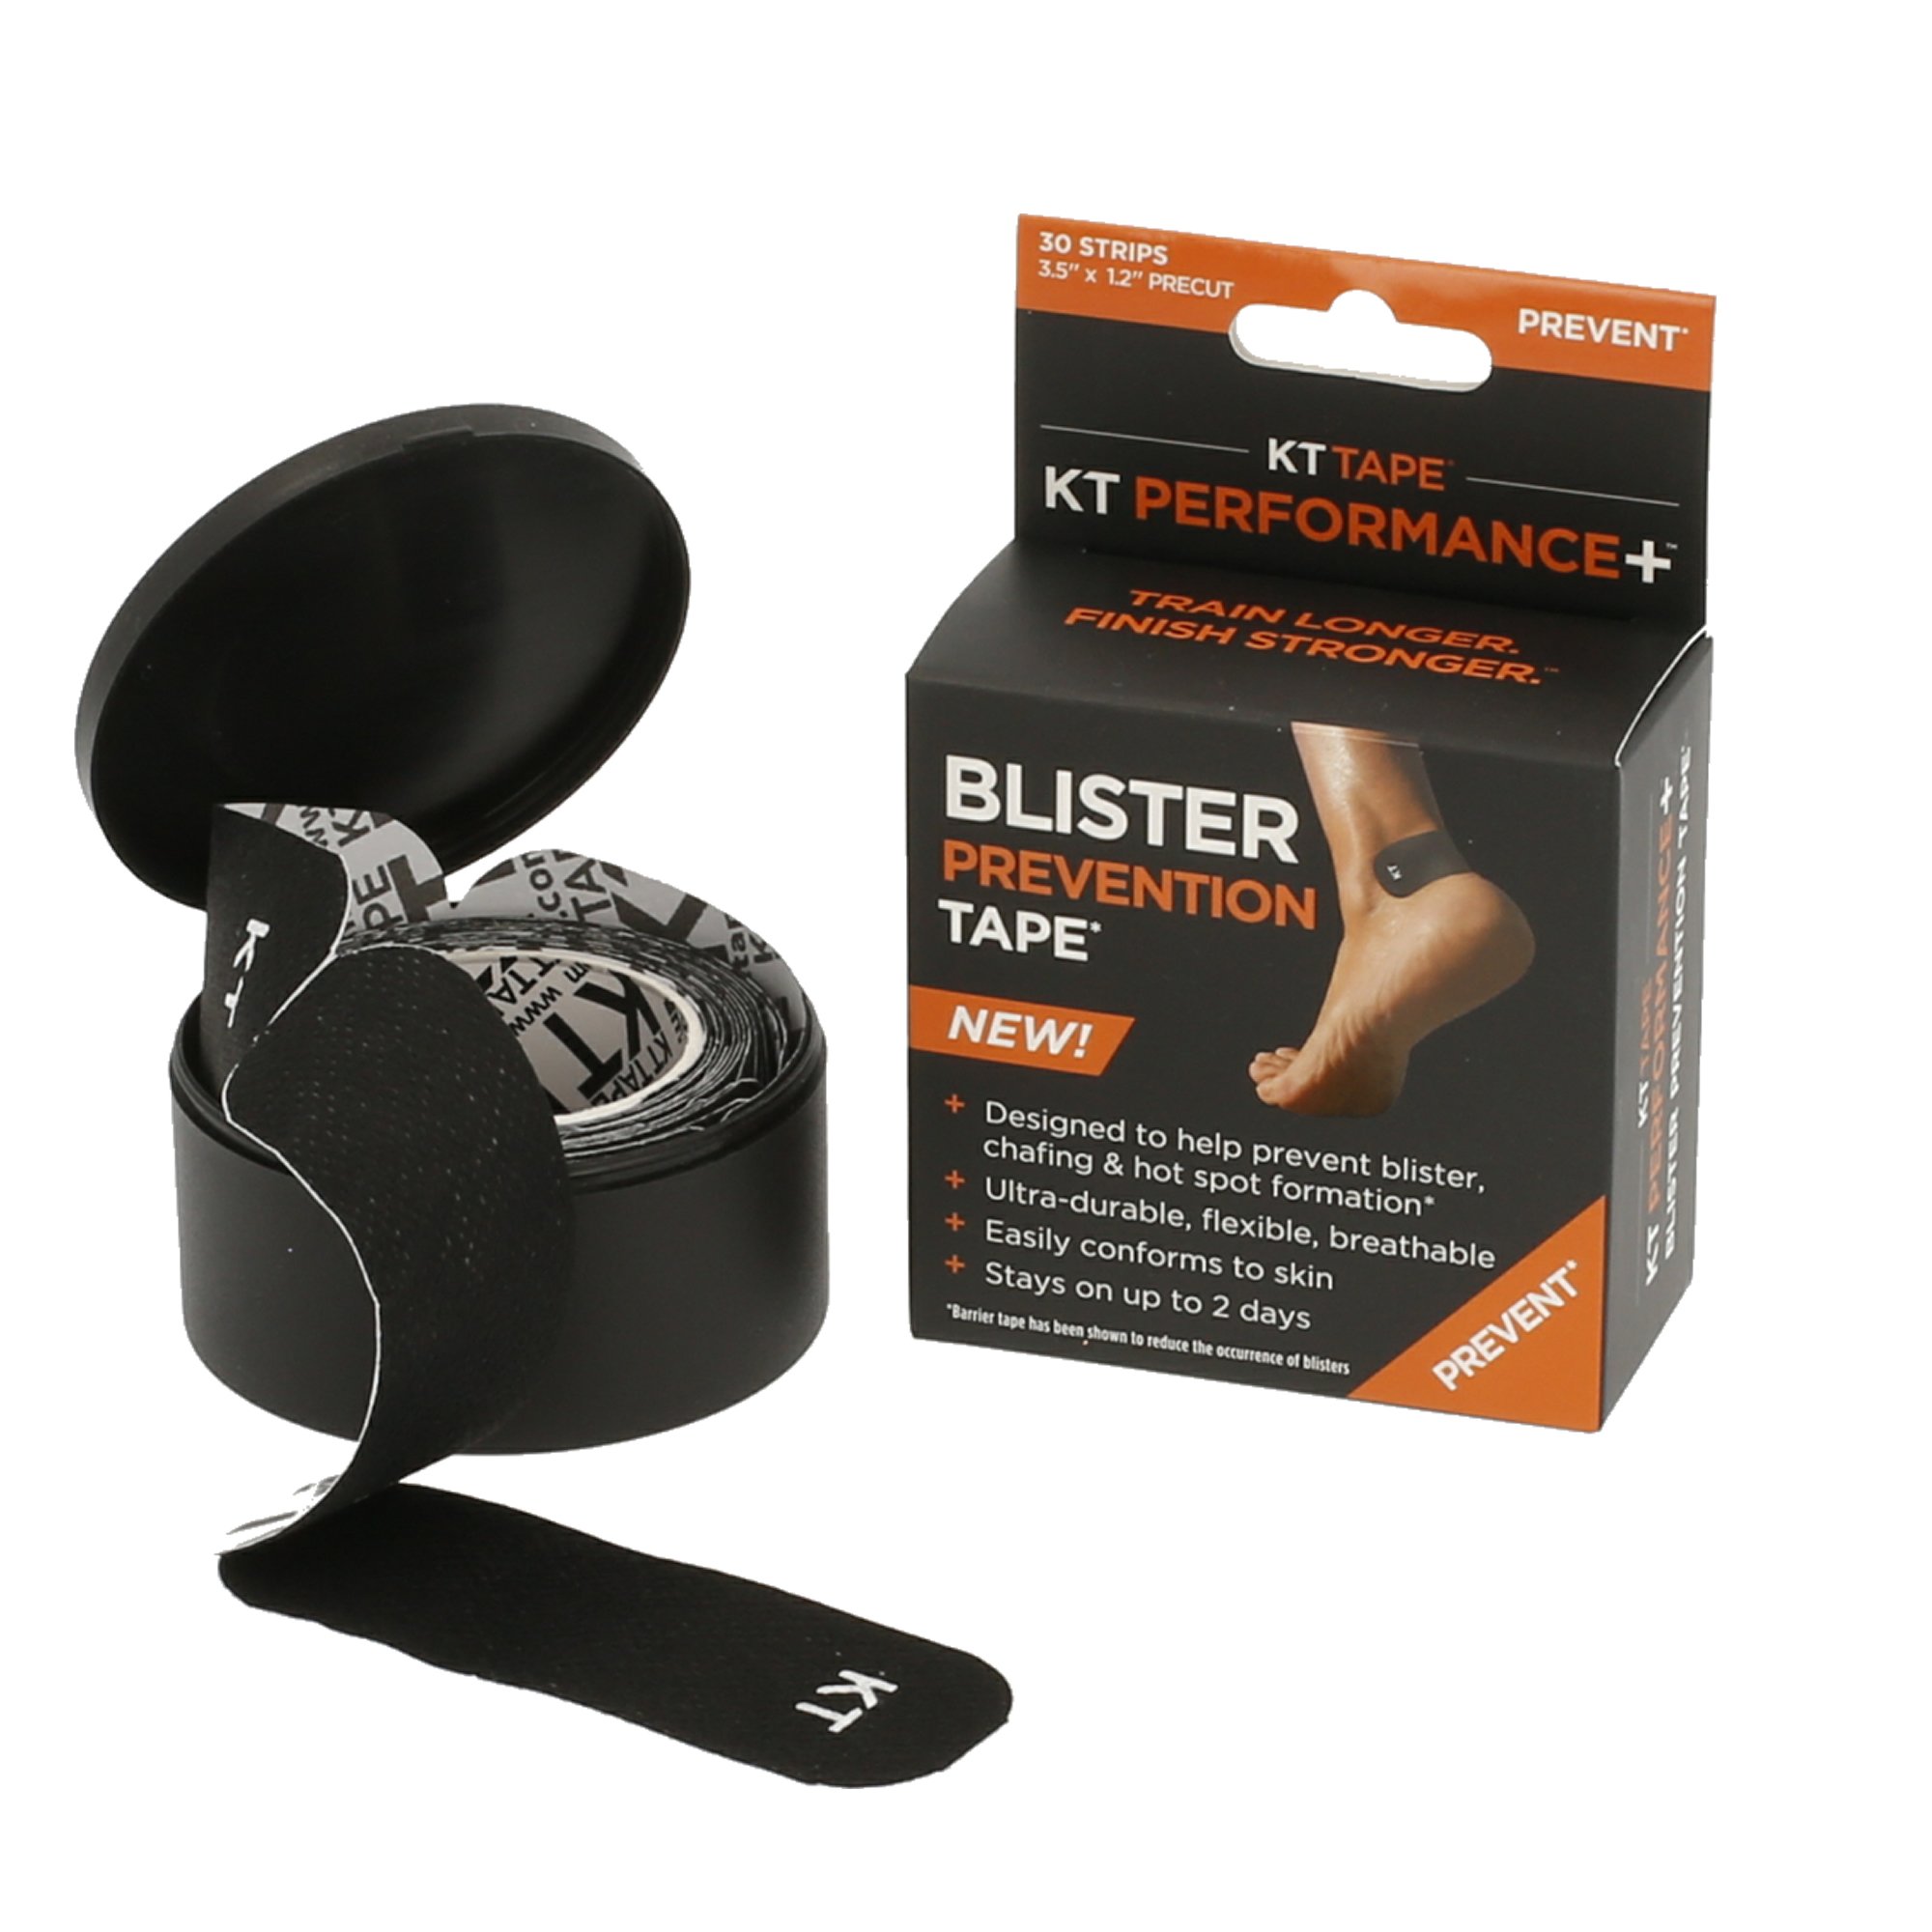 KT-Tape Blister Prevention Tape - 30 Stripes